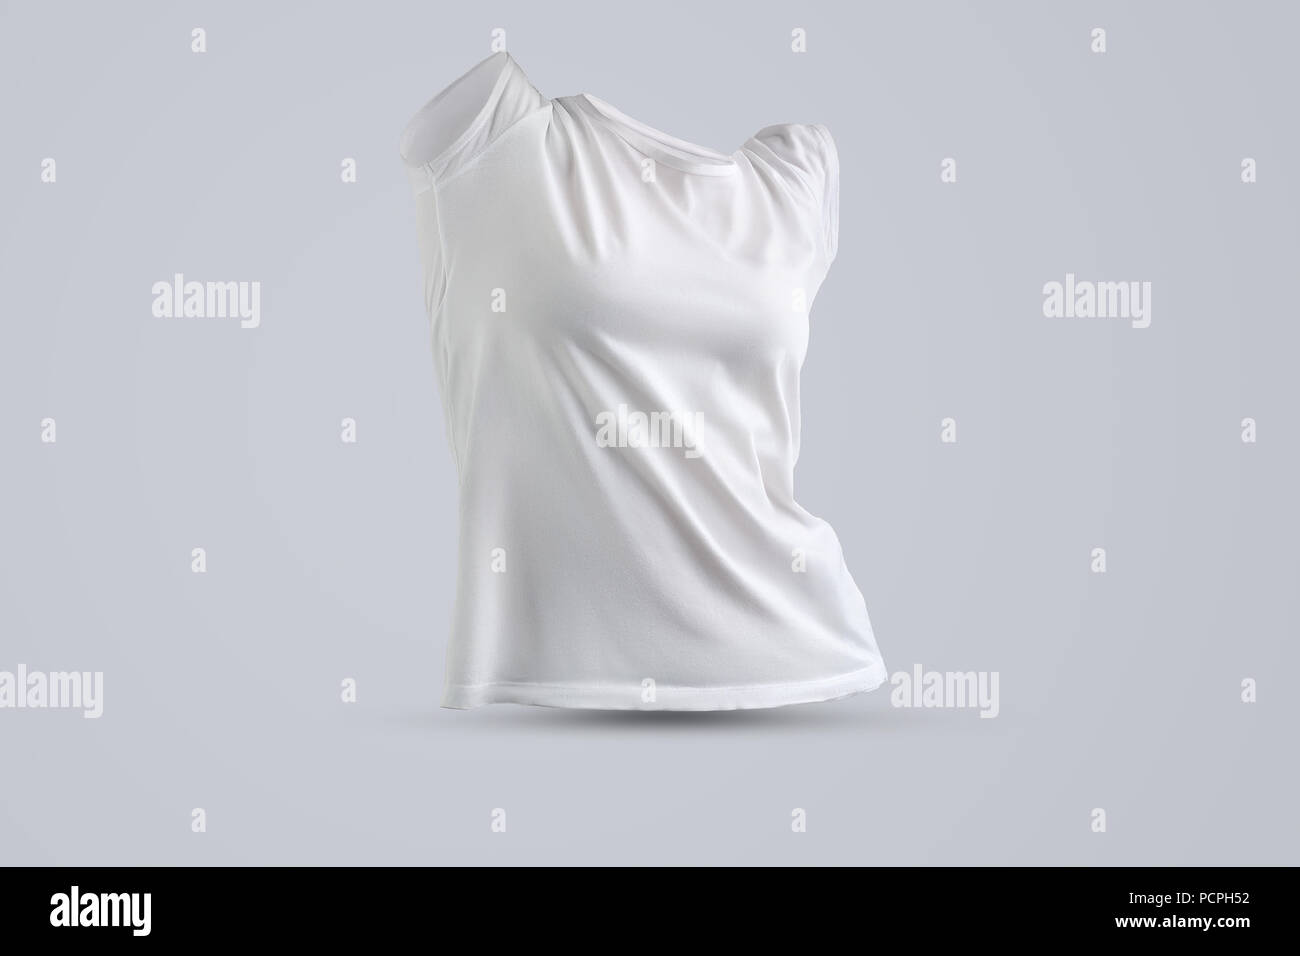 Moderne mockup mit Form der weißen Frauen t-shirt ohne Körper auf dem Studio Hintergrund isoliert, Vorderansicht. Vorlage kann für Ihre sh verwendet werden. Stockfoto